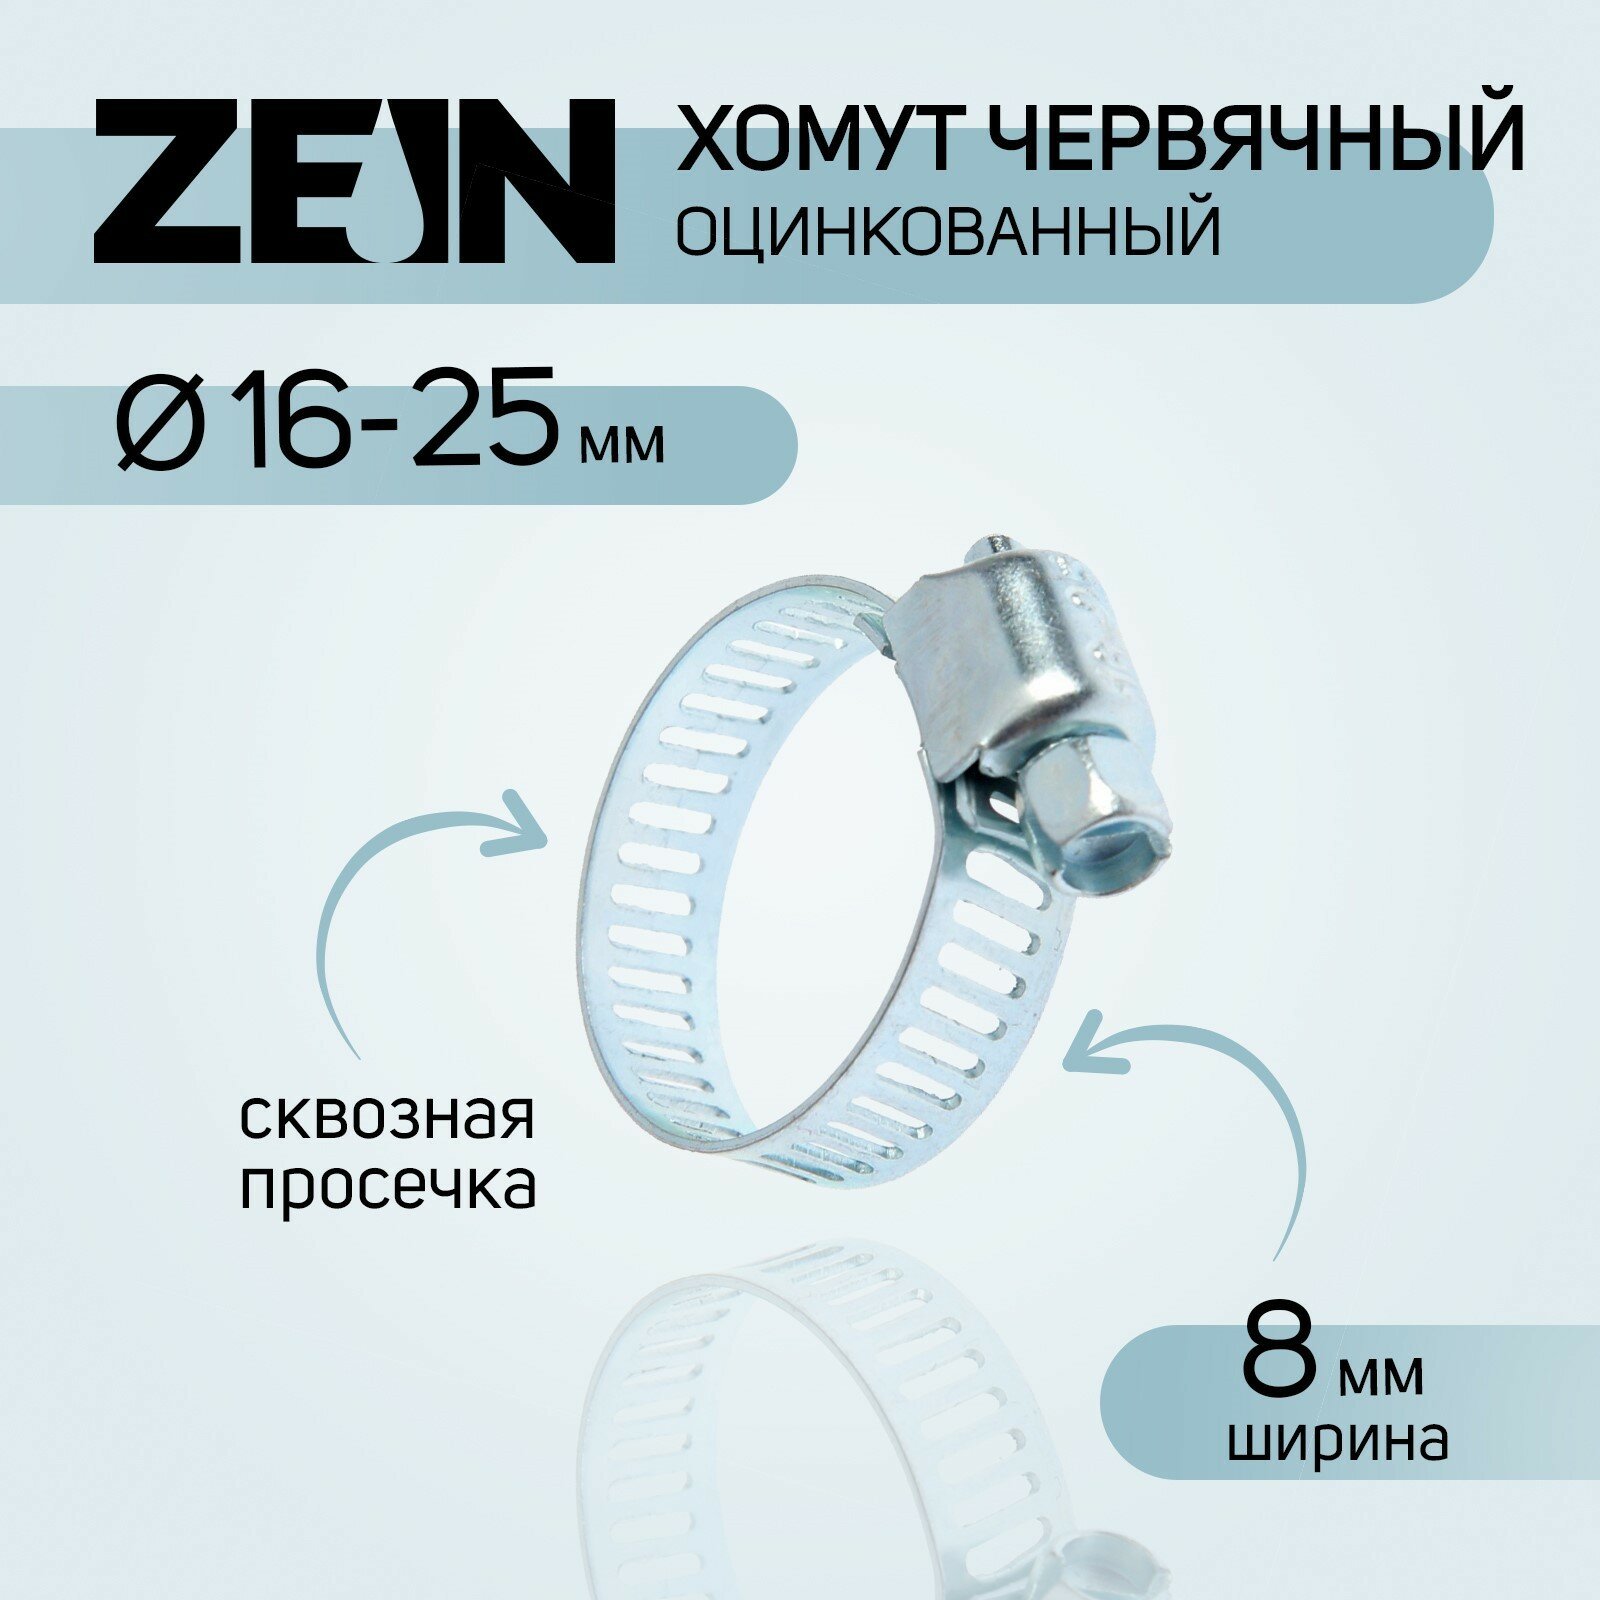 Хомут червячный ZEIN сквозная просечка диаметр 16-25 мм ширина 8 мм оцинкованный